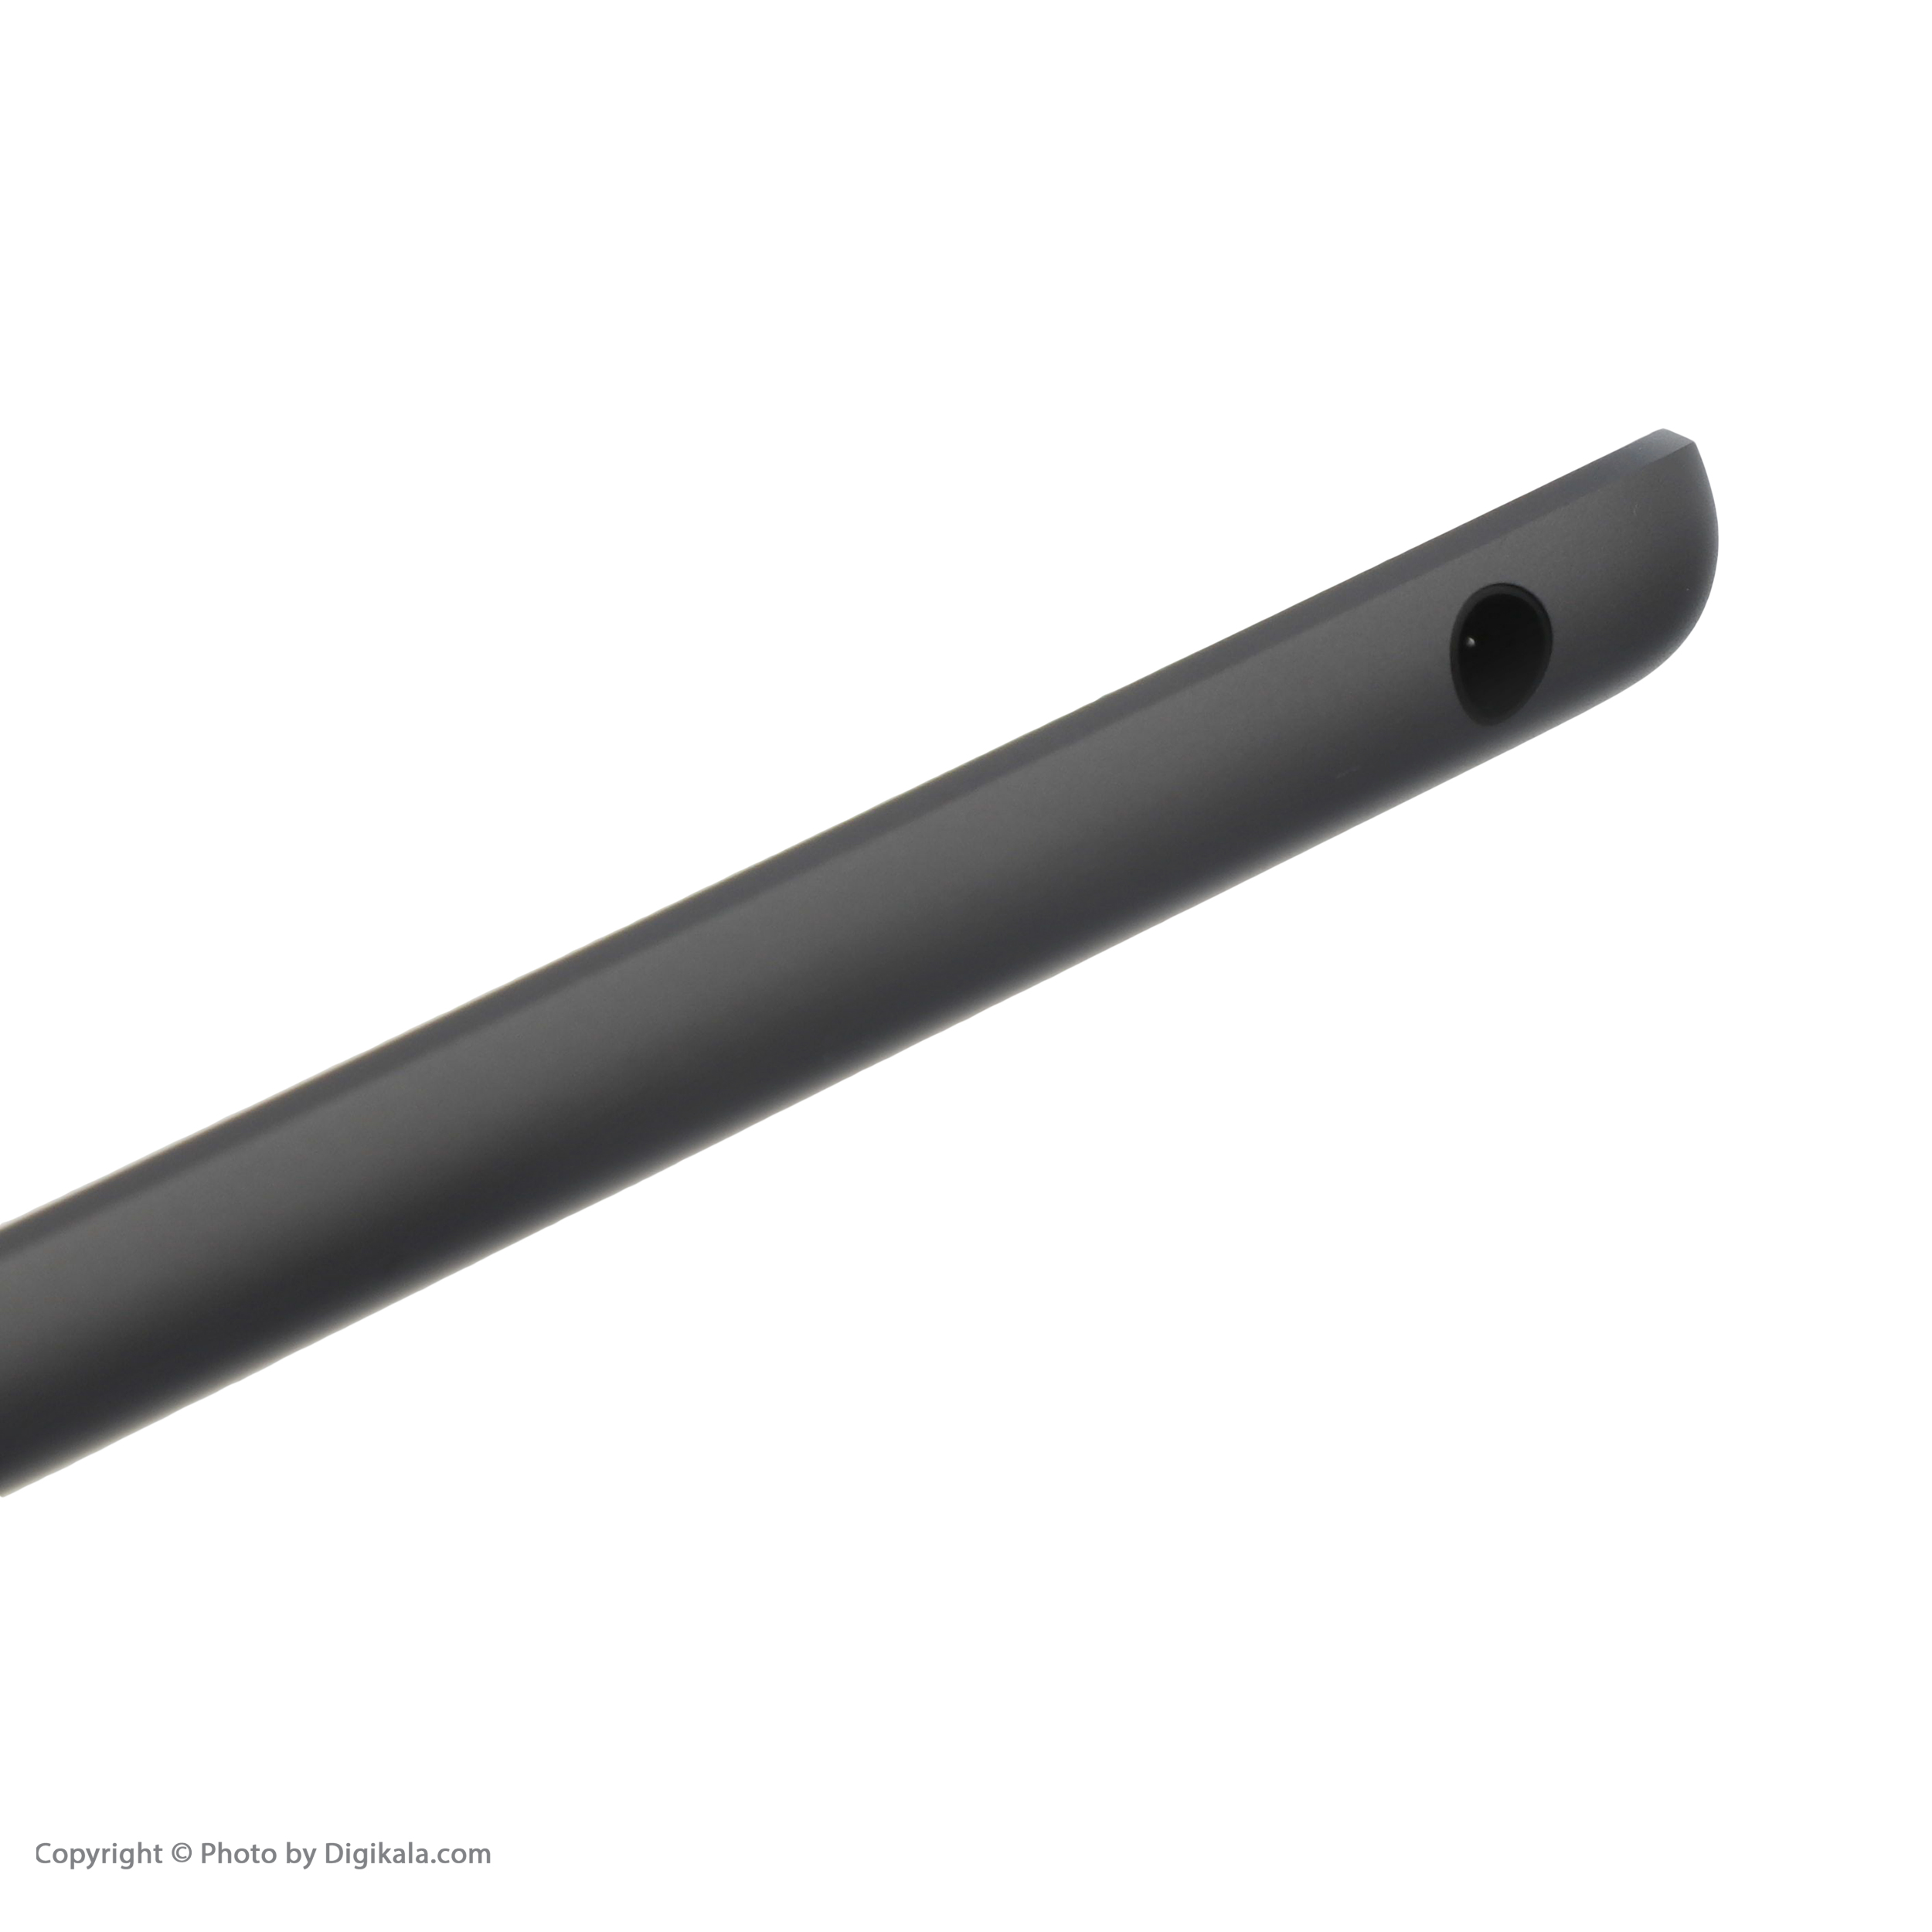 تبلت اپل مدل iPad 9th Generation 10.2-Inch cellular 2021 ظرفیت 64 گیگابایت